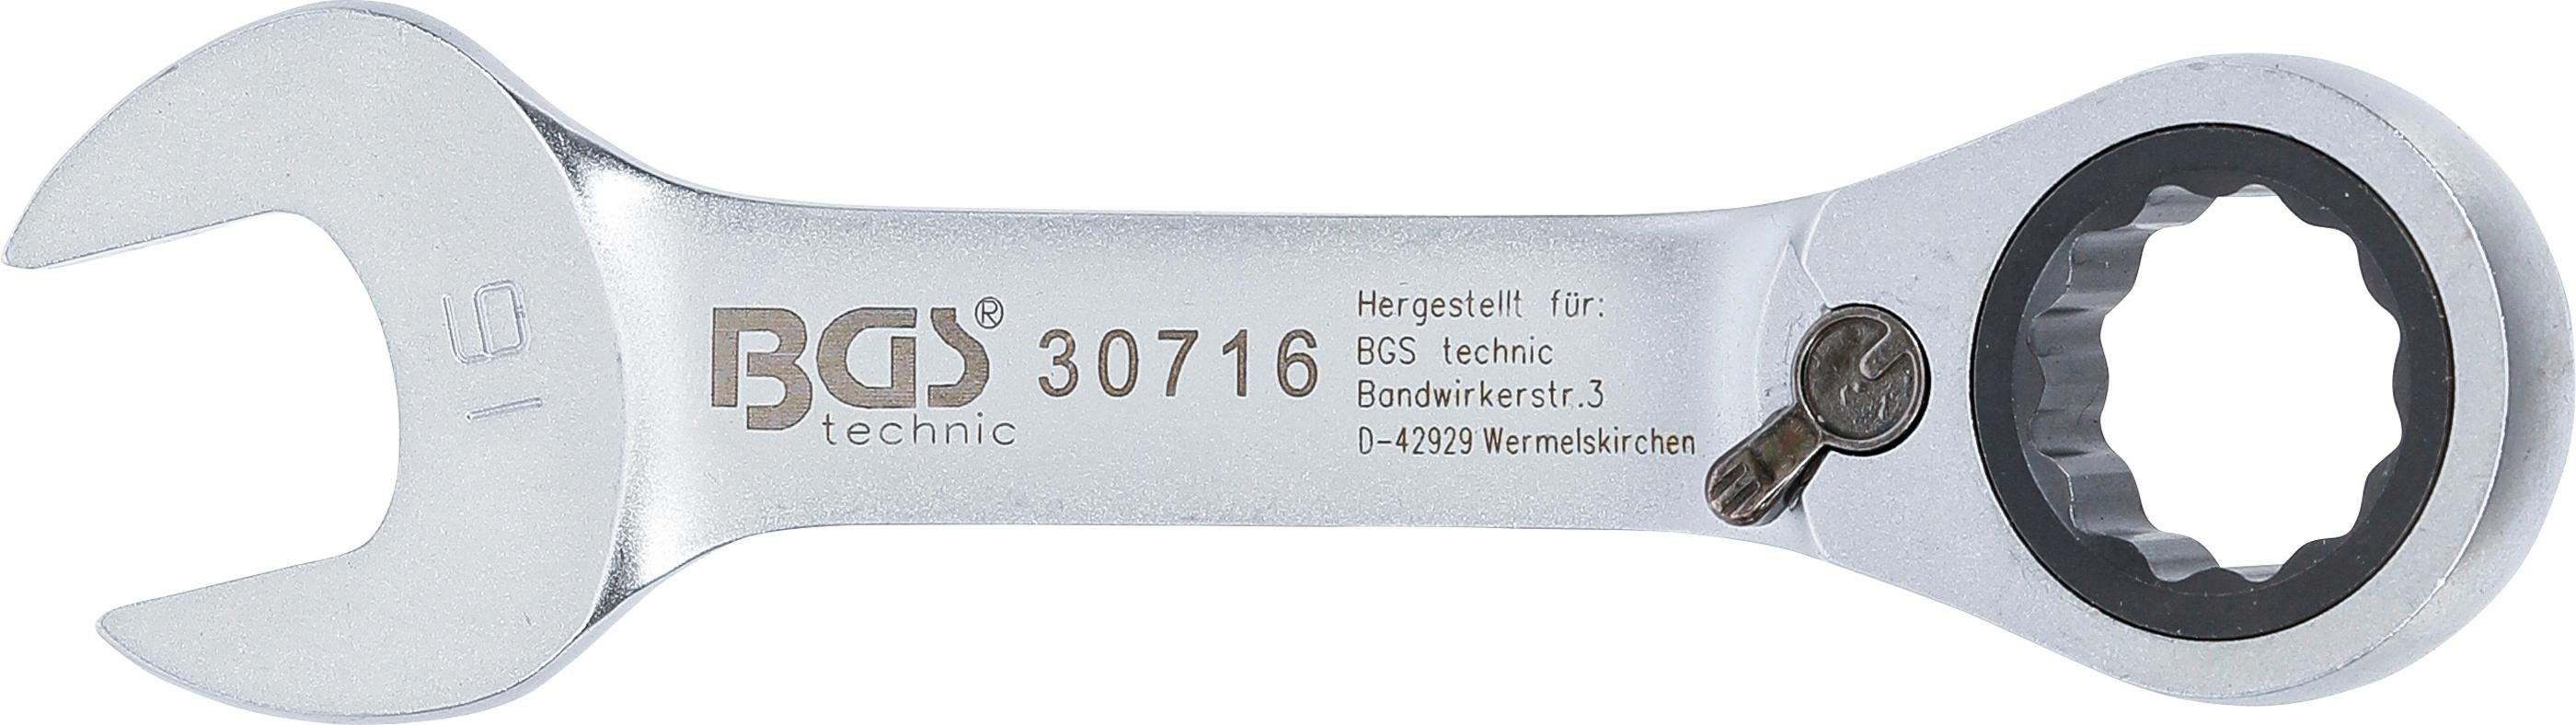 BGS technic mm SW Ratschenring-Maulschlüssel, kurz, umschaltbar, 16 Stecknuss